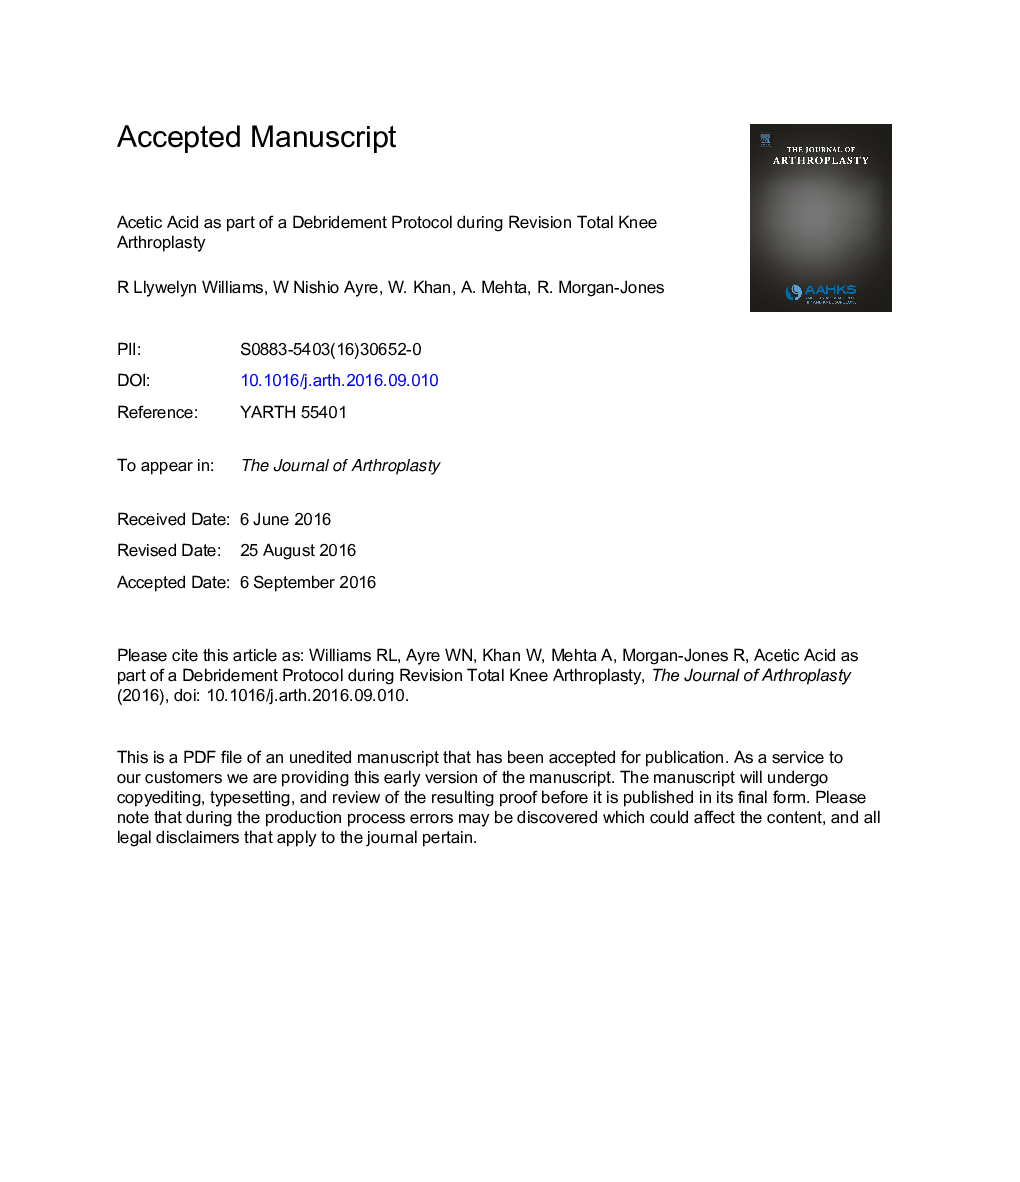 اسید استیک به عنوان بخشی از یک پروتکل تصفیه در طی بازنگری کامل آرتروپلاستی زانو 